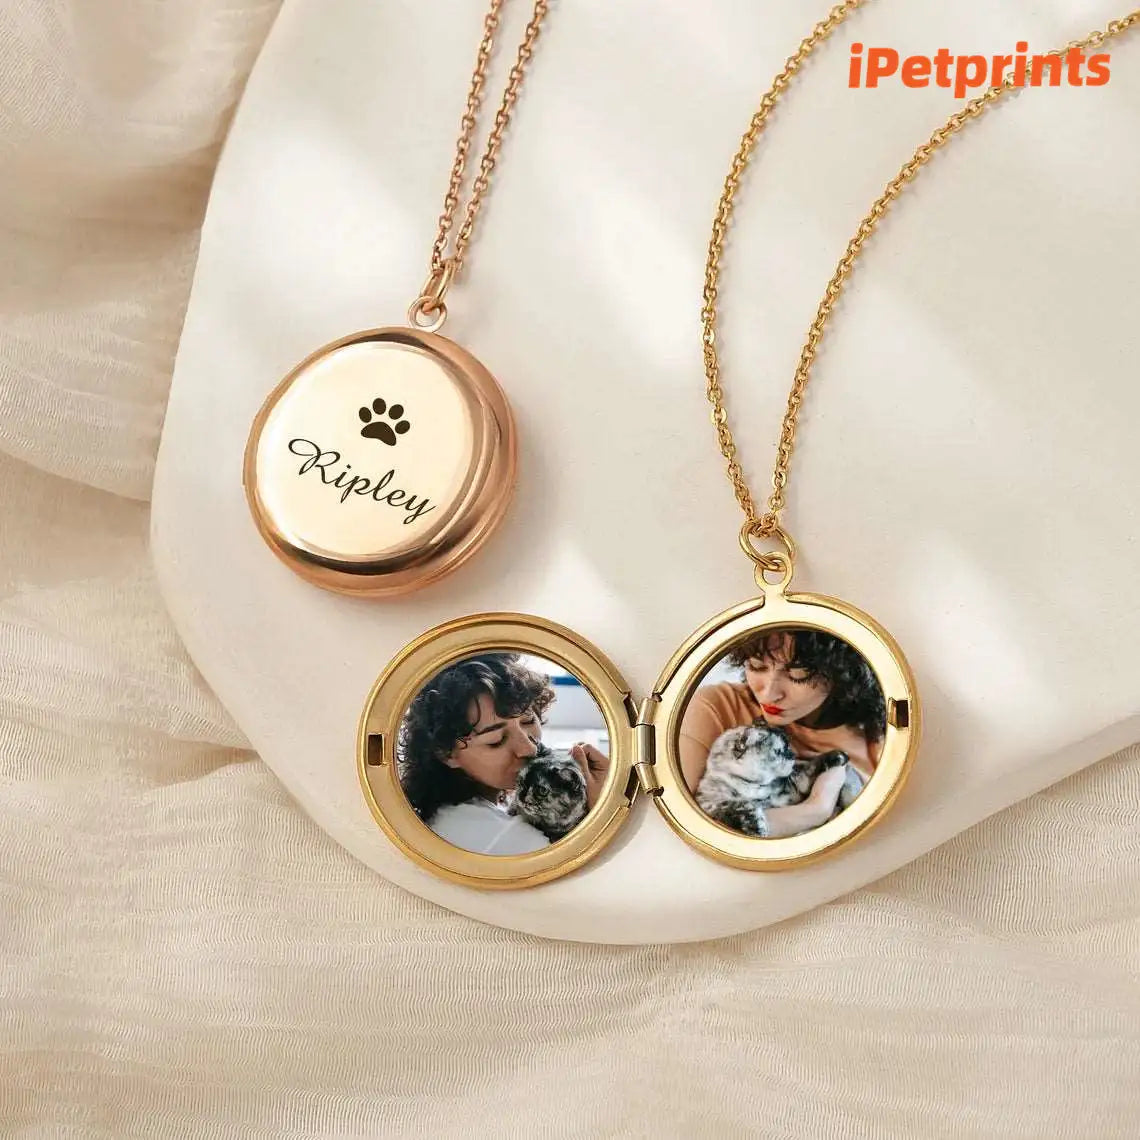 iPetprints Personalized Pet Portrait Locket Necklace